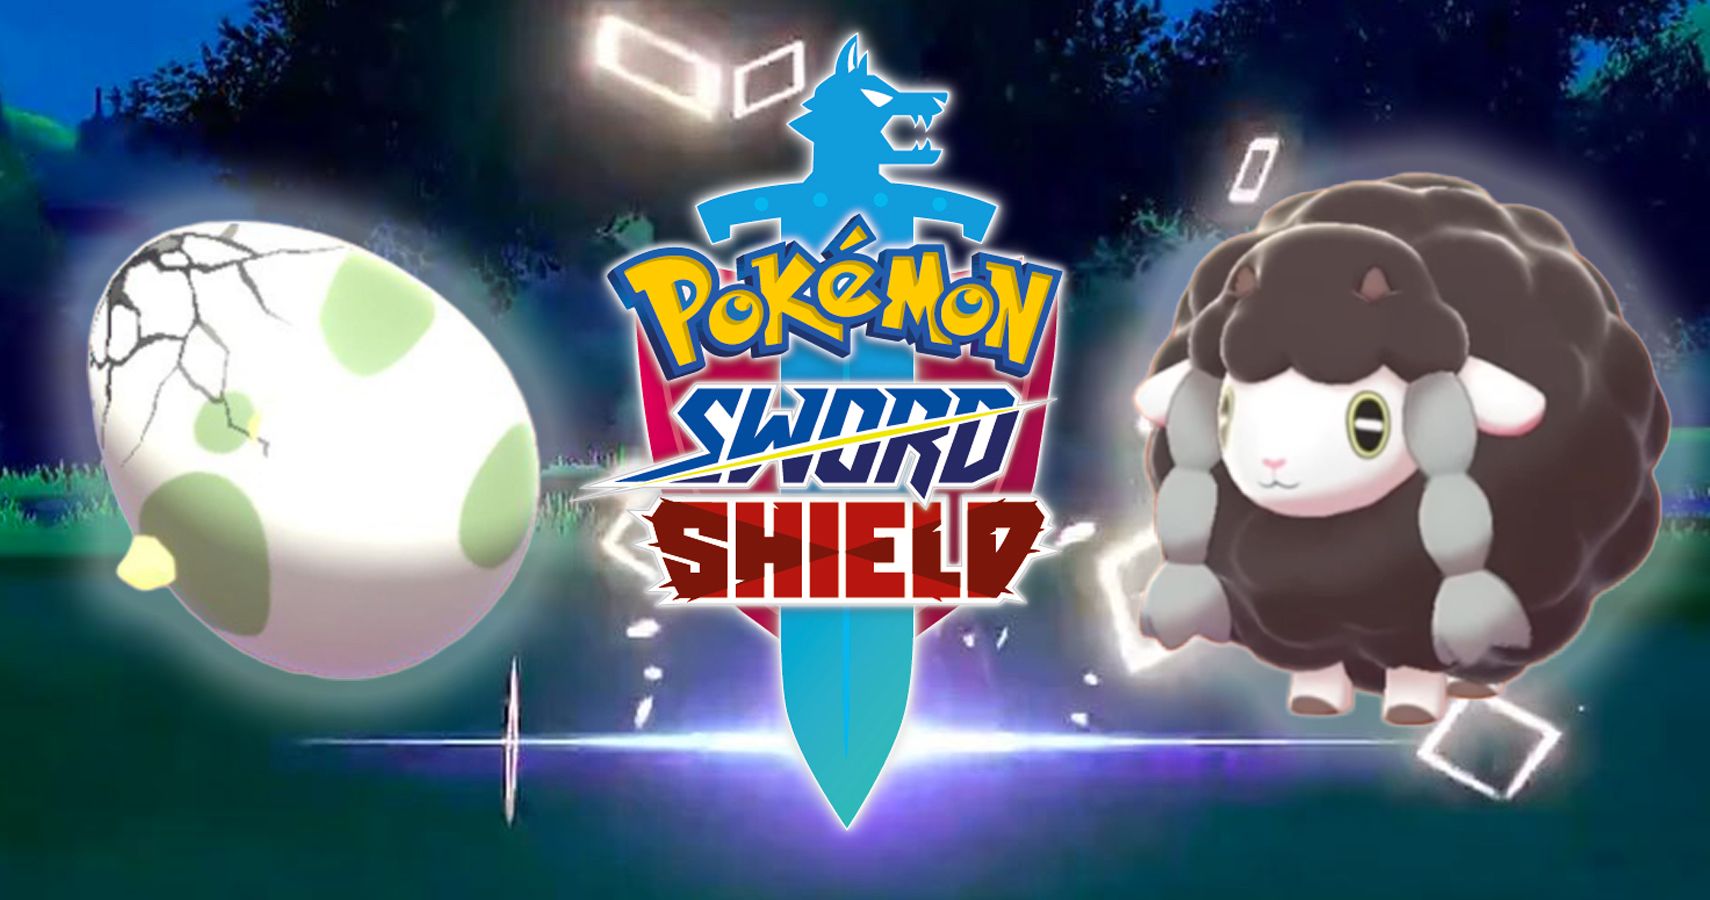 Pokémon Sword Shield How To Catch And Hatch Shiny Pokémon